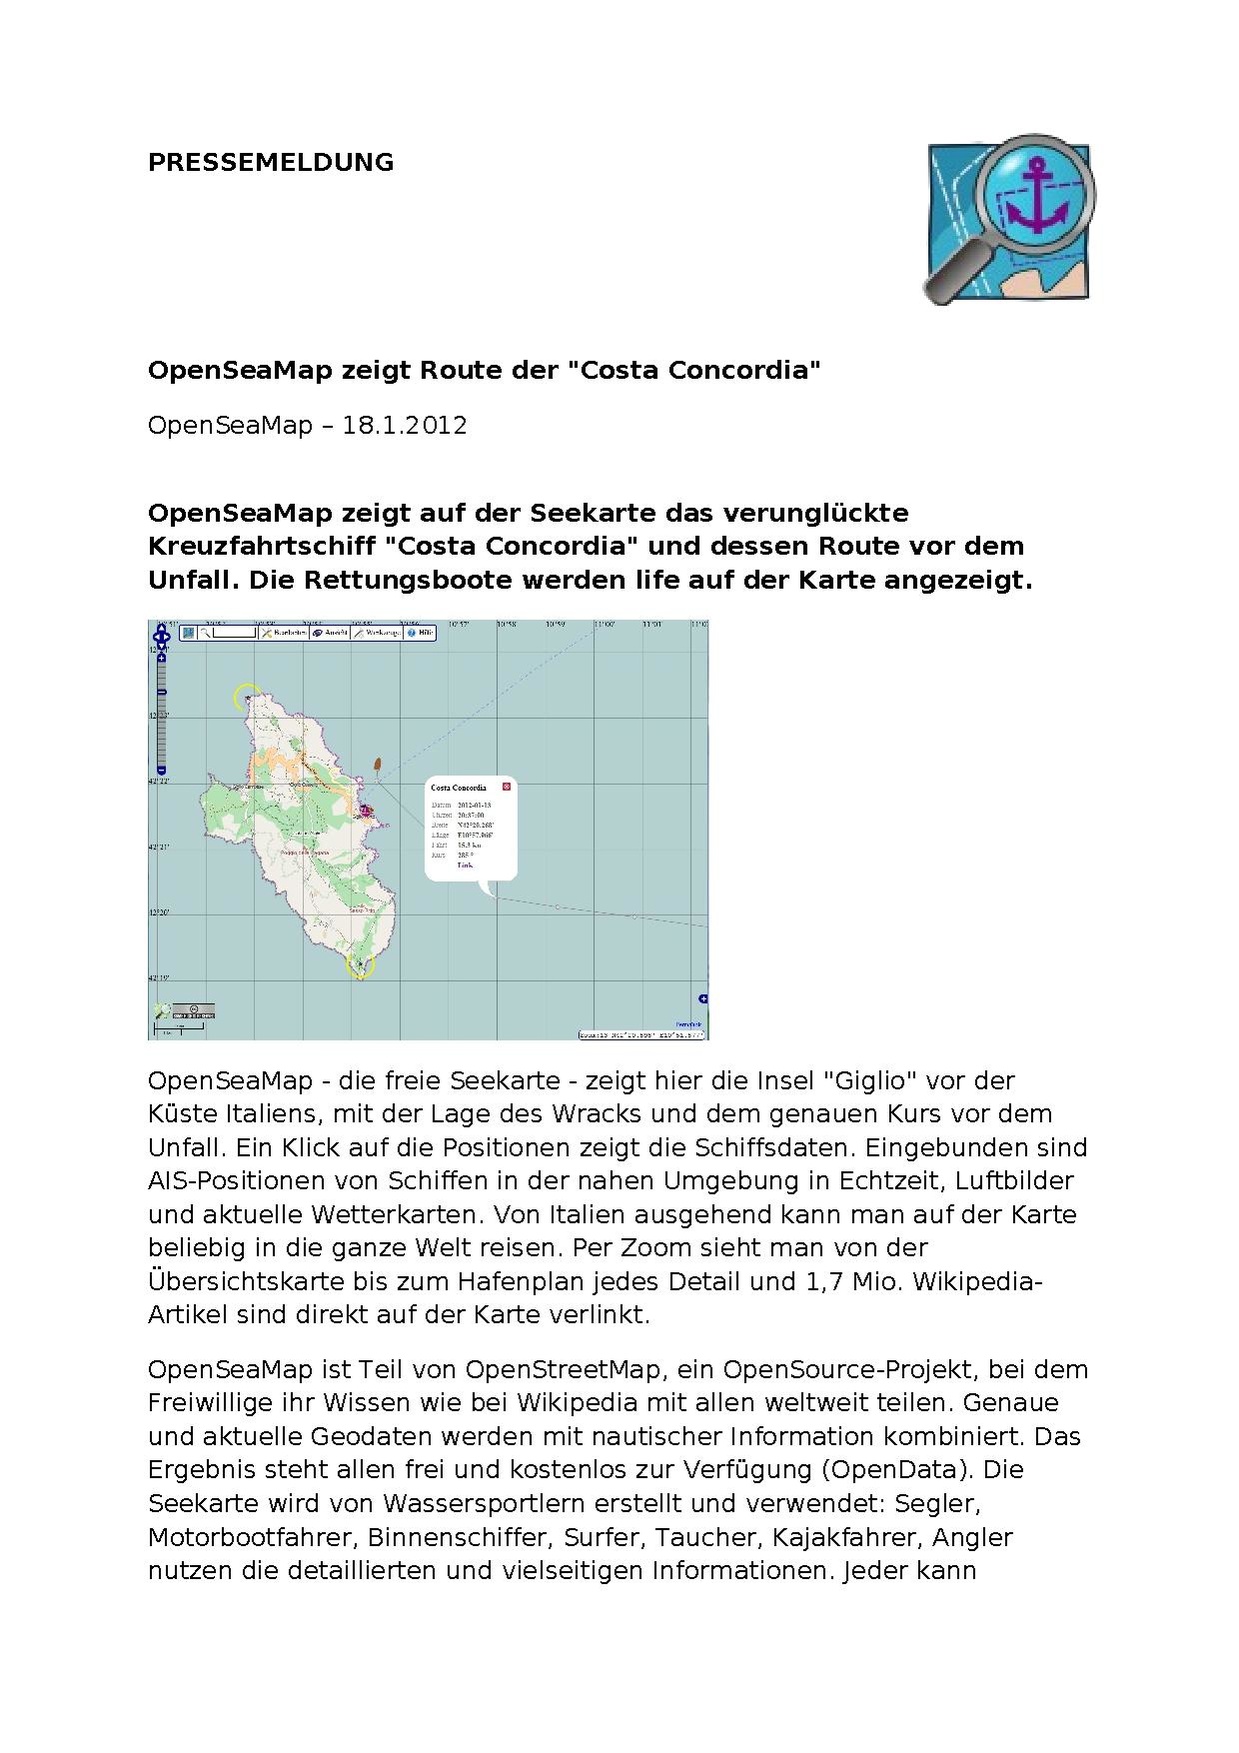 PM-OpenSeaMap zeigt Route der Costa Concordia.pdf